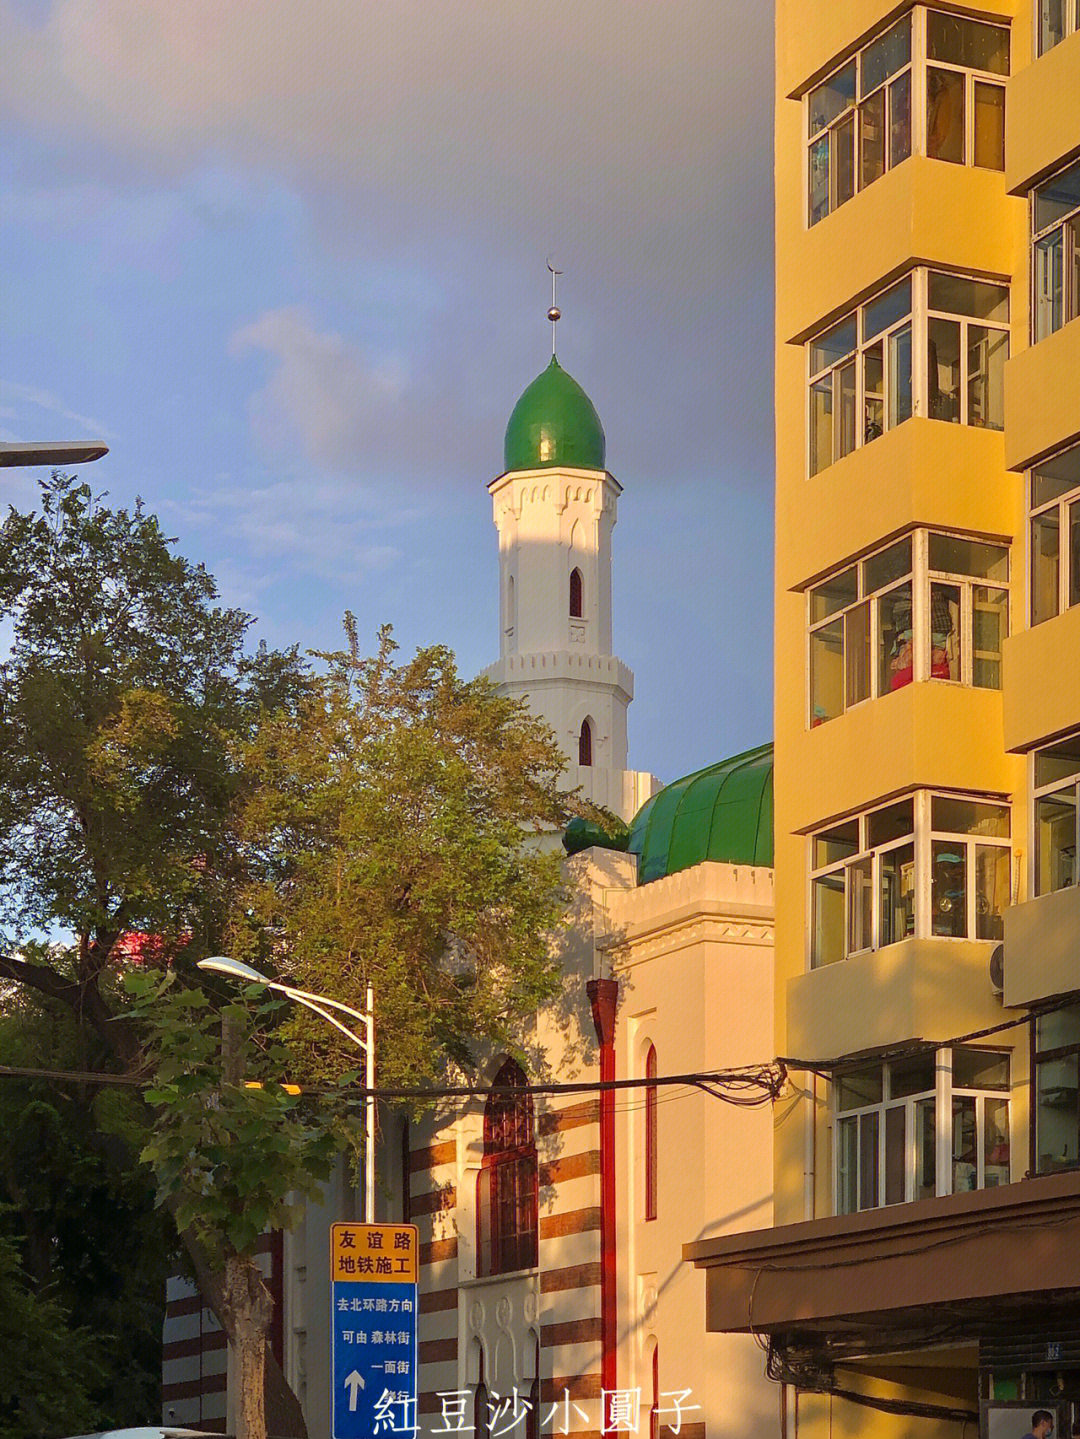 通江街108號有一幢土耳其清真寺,始建於光緒二十七年(1901年),光緒